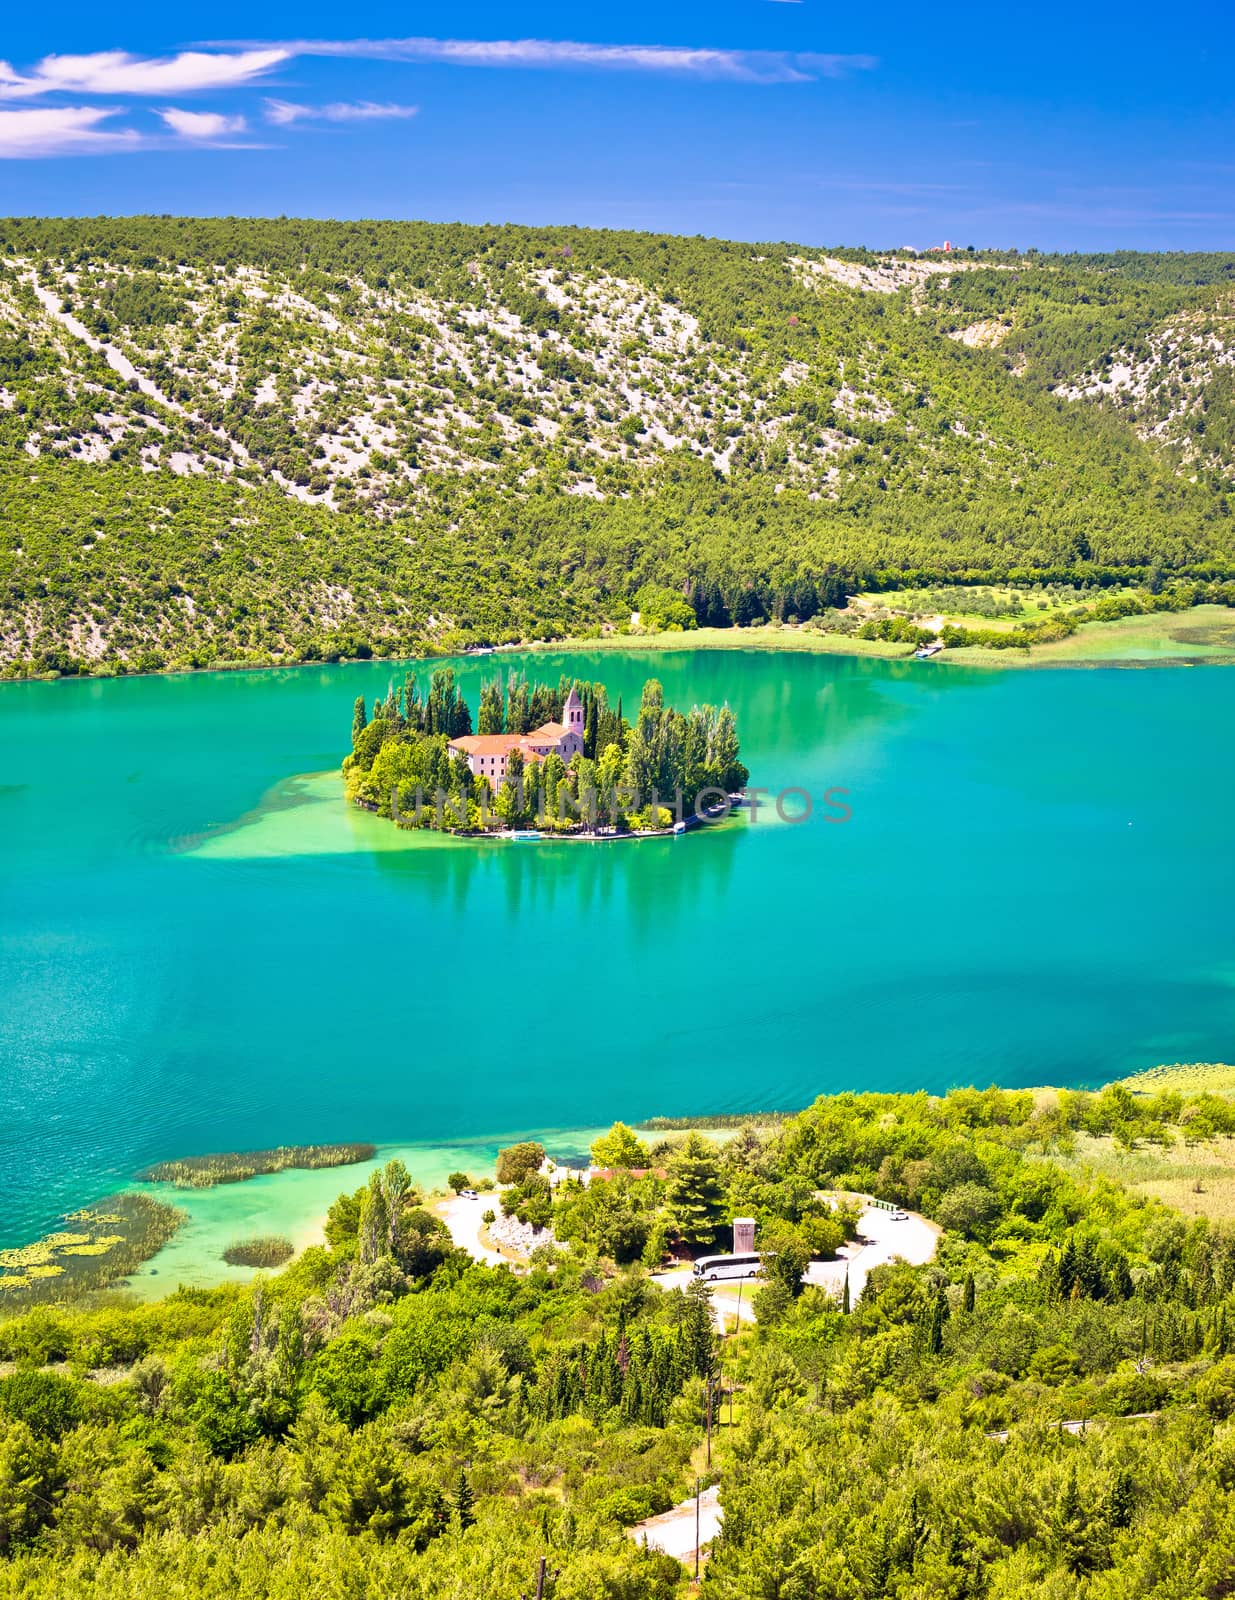 Visovac lake island monastery aerial view by xbrchx